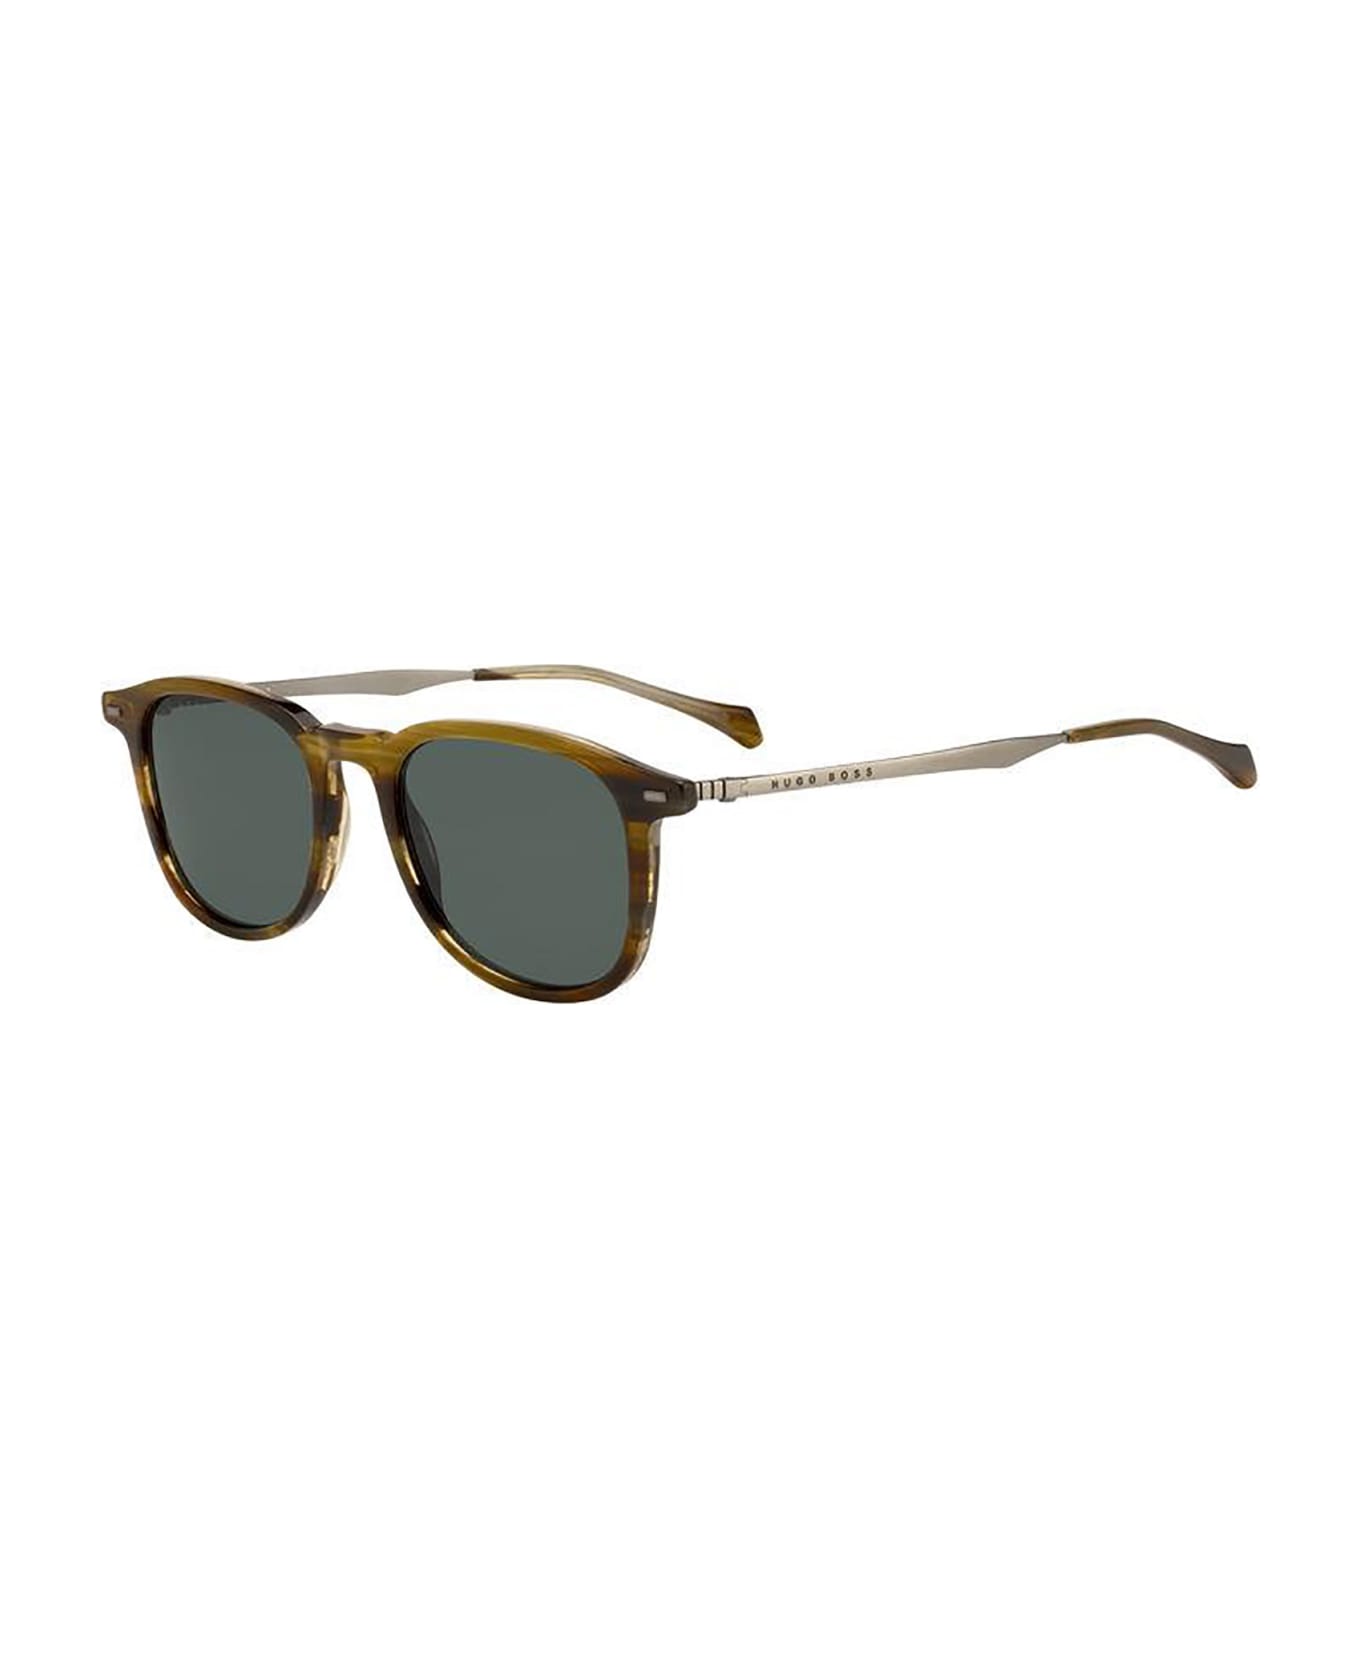 Hugo Boss BOSS 1094/S Sunglasses - /qt Brown Horn